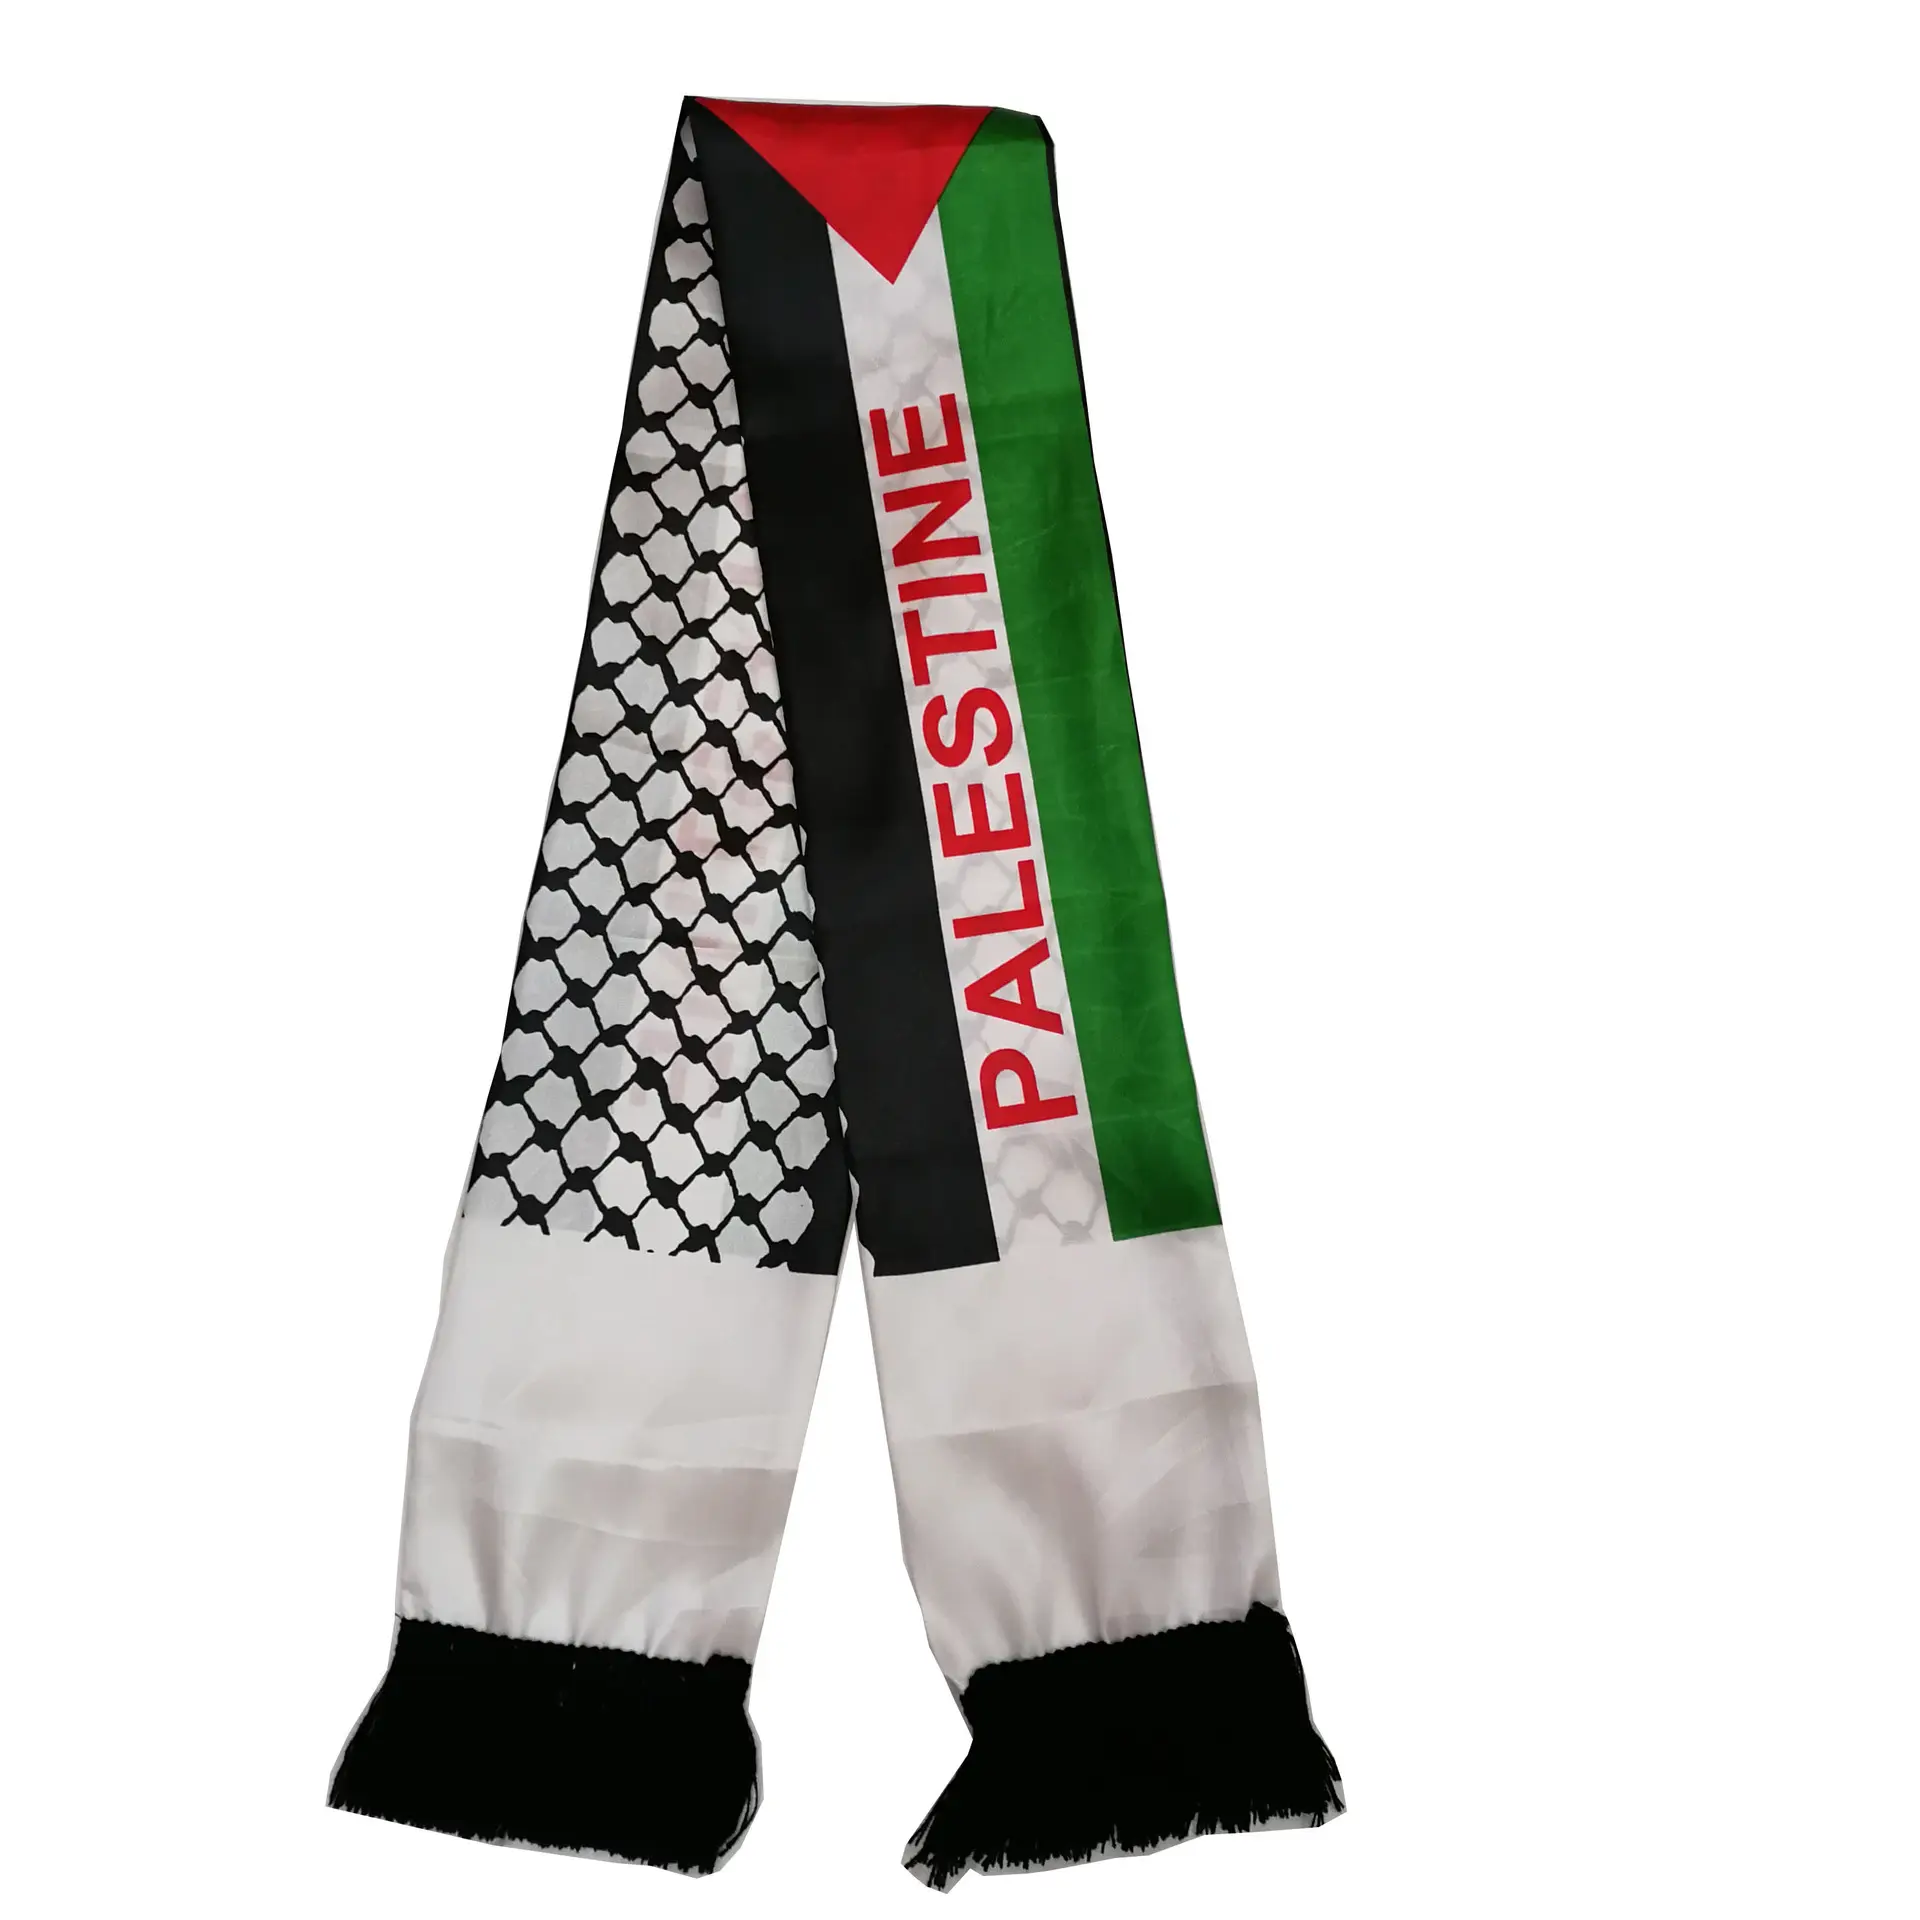 Promoción muy Popular LOGOTIPO personalizado Bandera de Palestina Bufanda para tejer Bufanda de fanáticos del fútbol